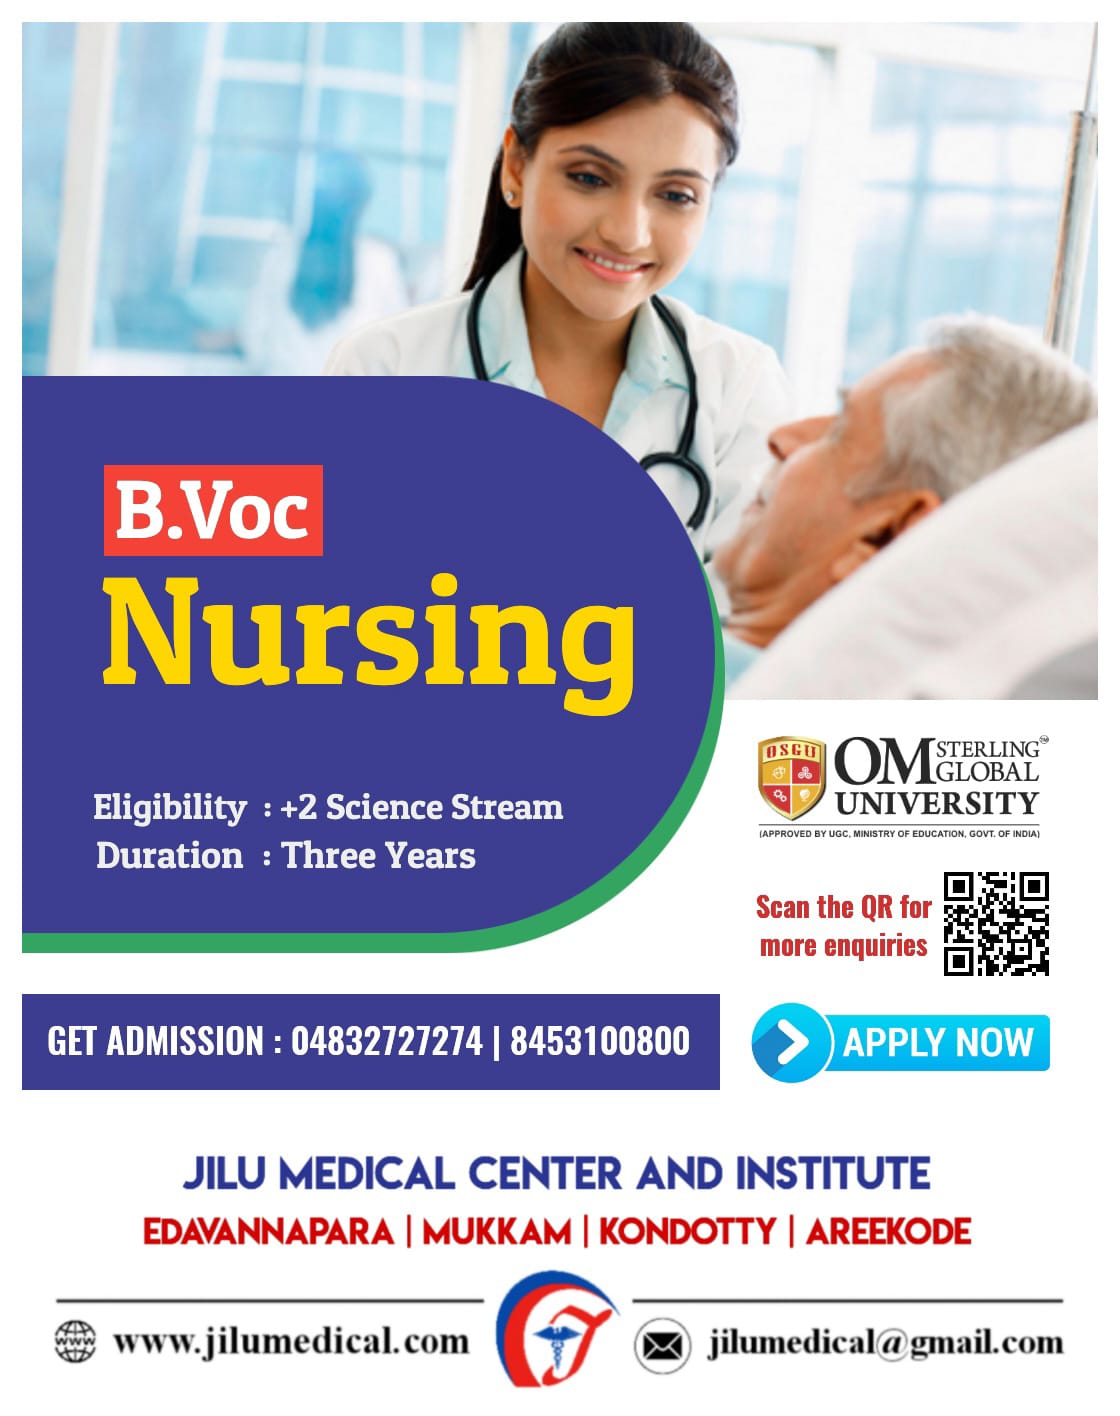 jilu medical institute posters